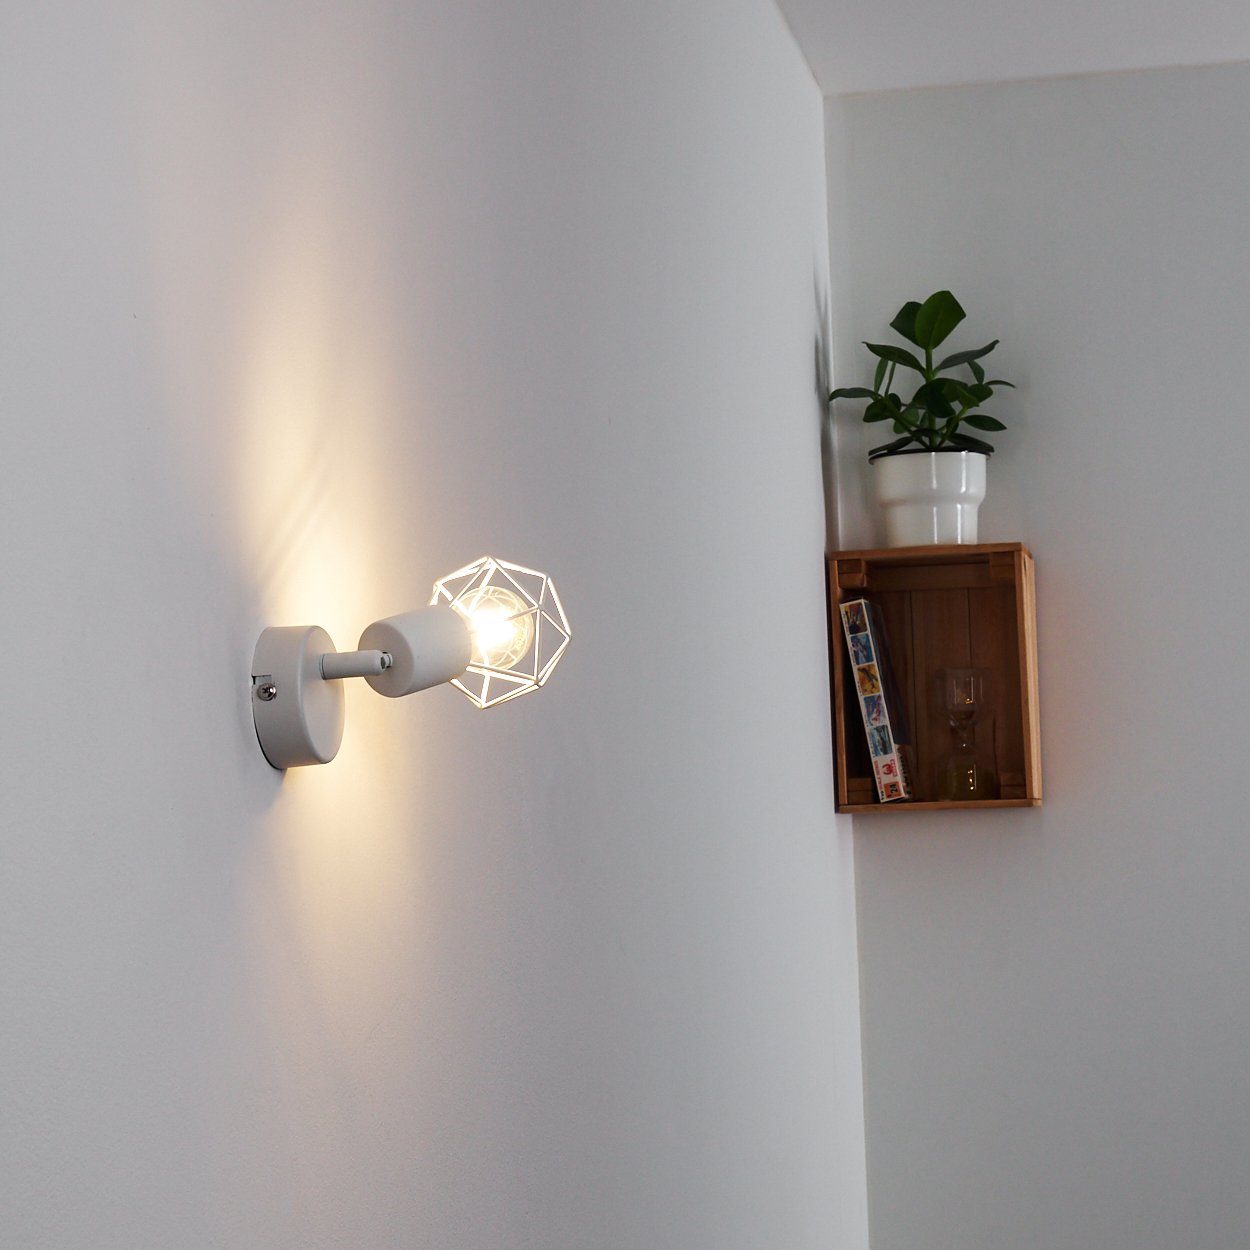 Metall ohne in Wandleuchte mit Retro/Vintage Design Wandlampe aus E14, Wandspot im Gitter-Optik »Borio« verstellbare hofstein Lichteffekt Leuchtmittel, in Weiß,